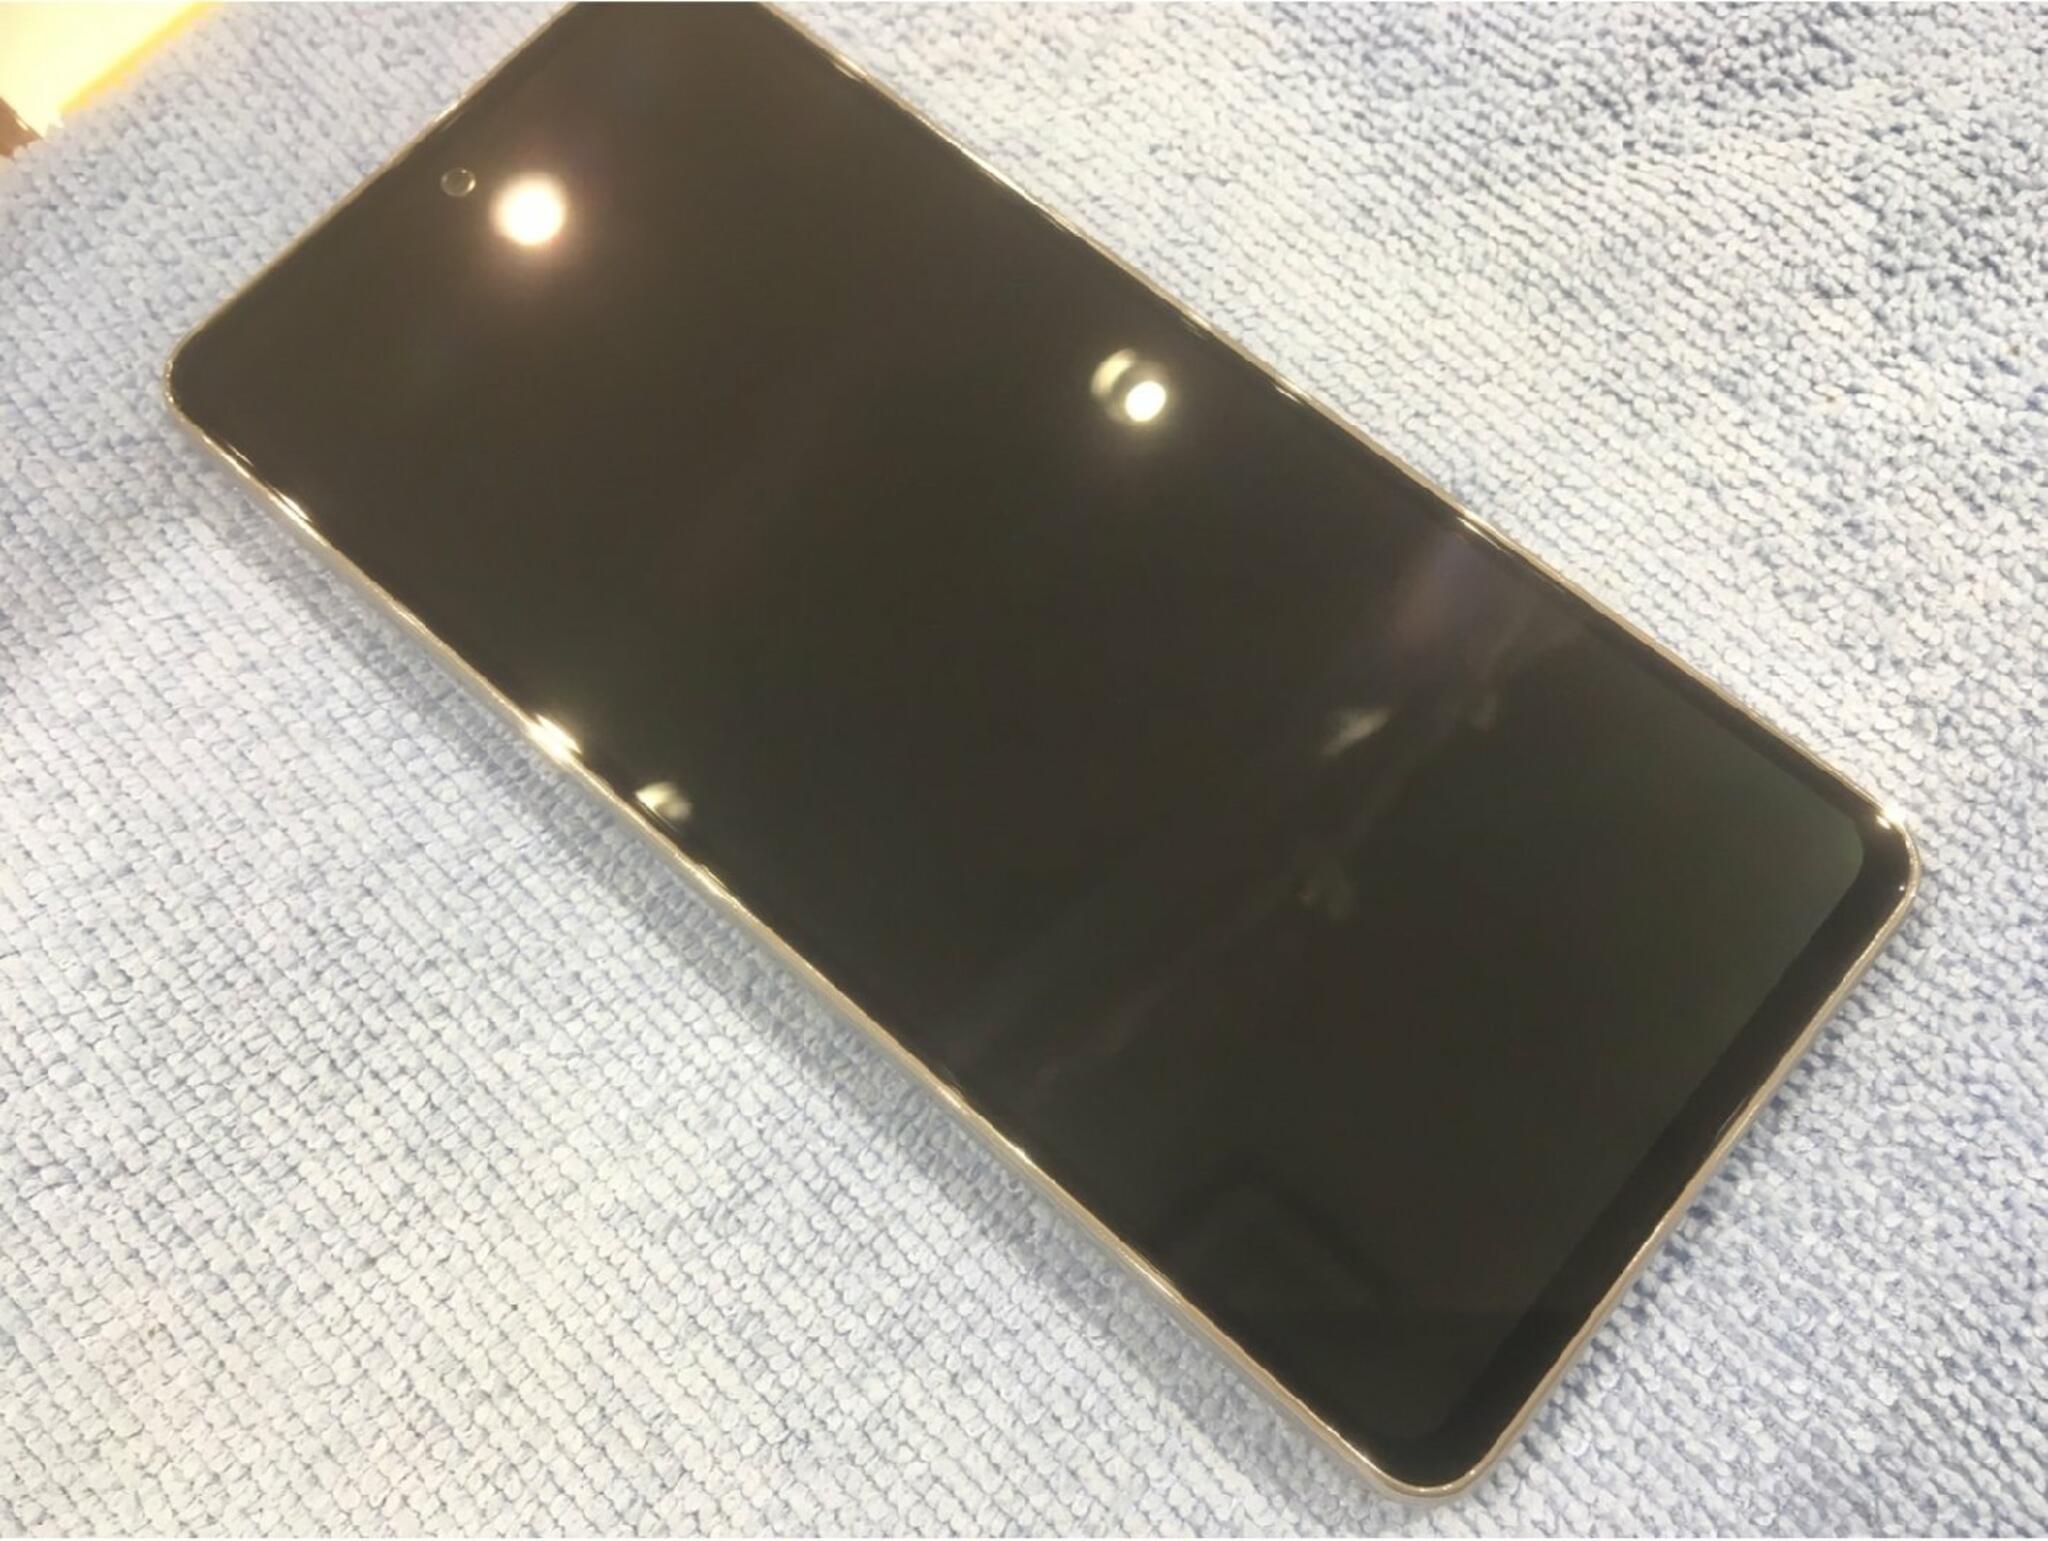 iPhone・iPad・Switch修理店 スマートクール イオンモール広島祇園店からのお知らせ(新しい機種にガラスコーティングで画面強化しませんか )に関する写真